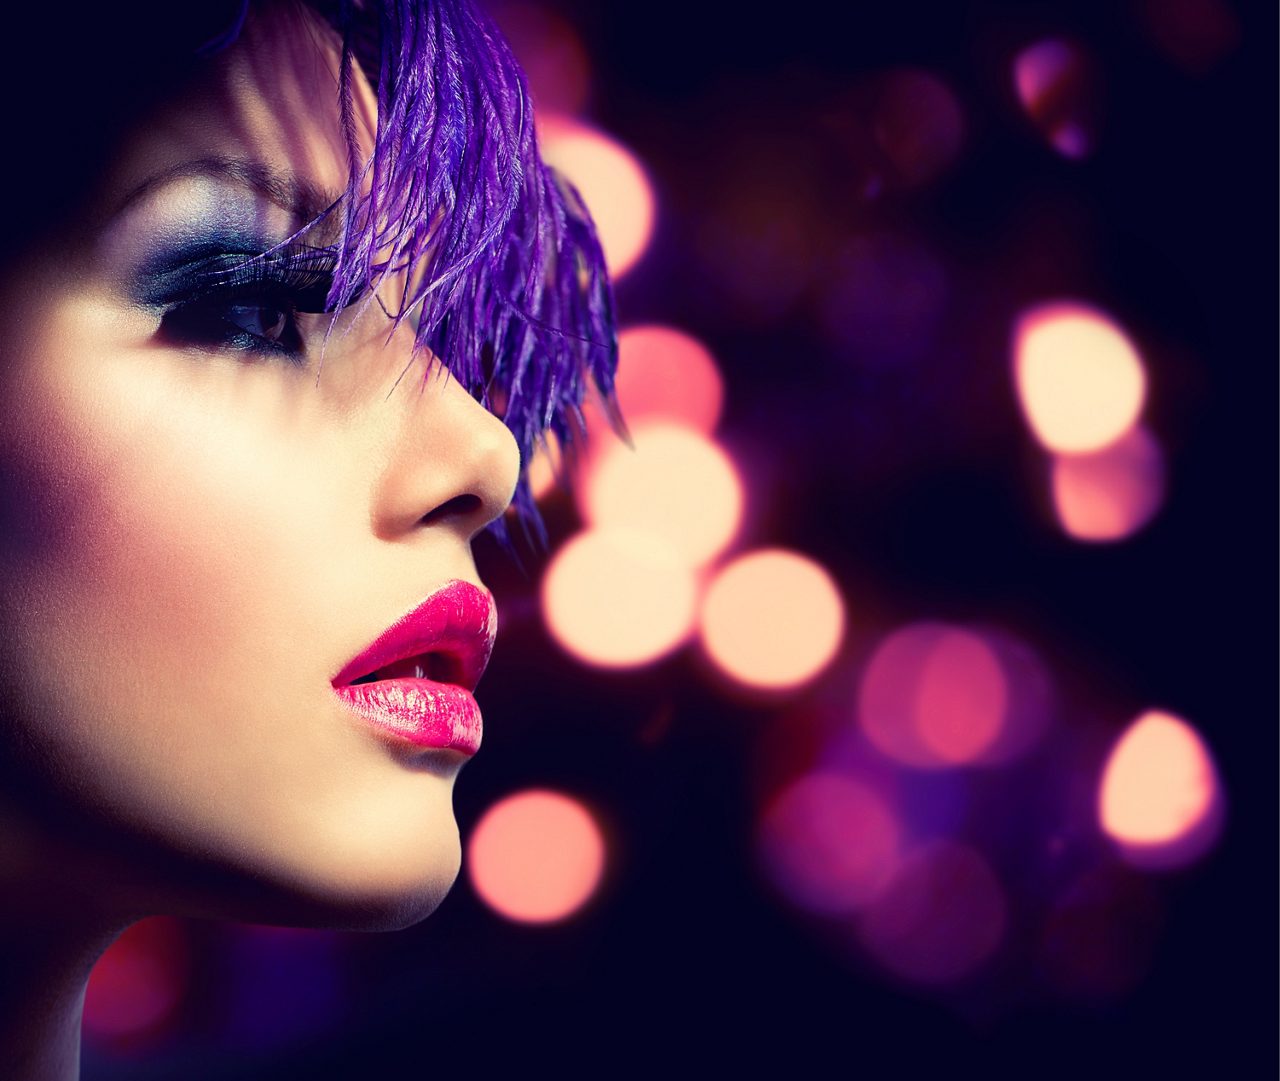 紫色の髪、ピンク色の口紅、なめらかな肌を持つ女性